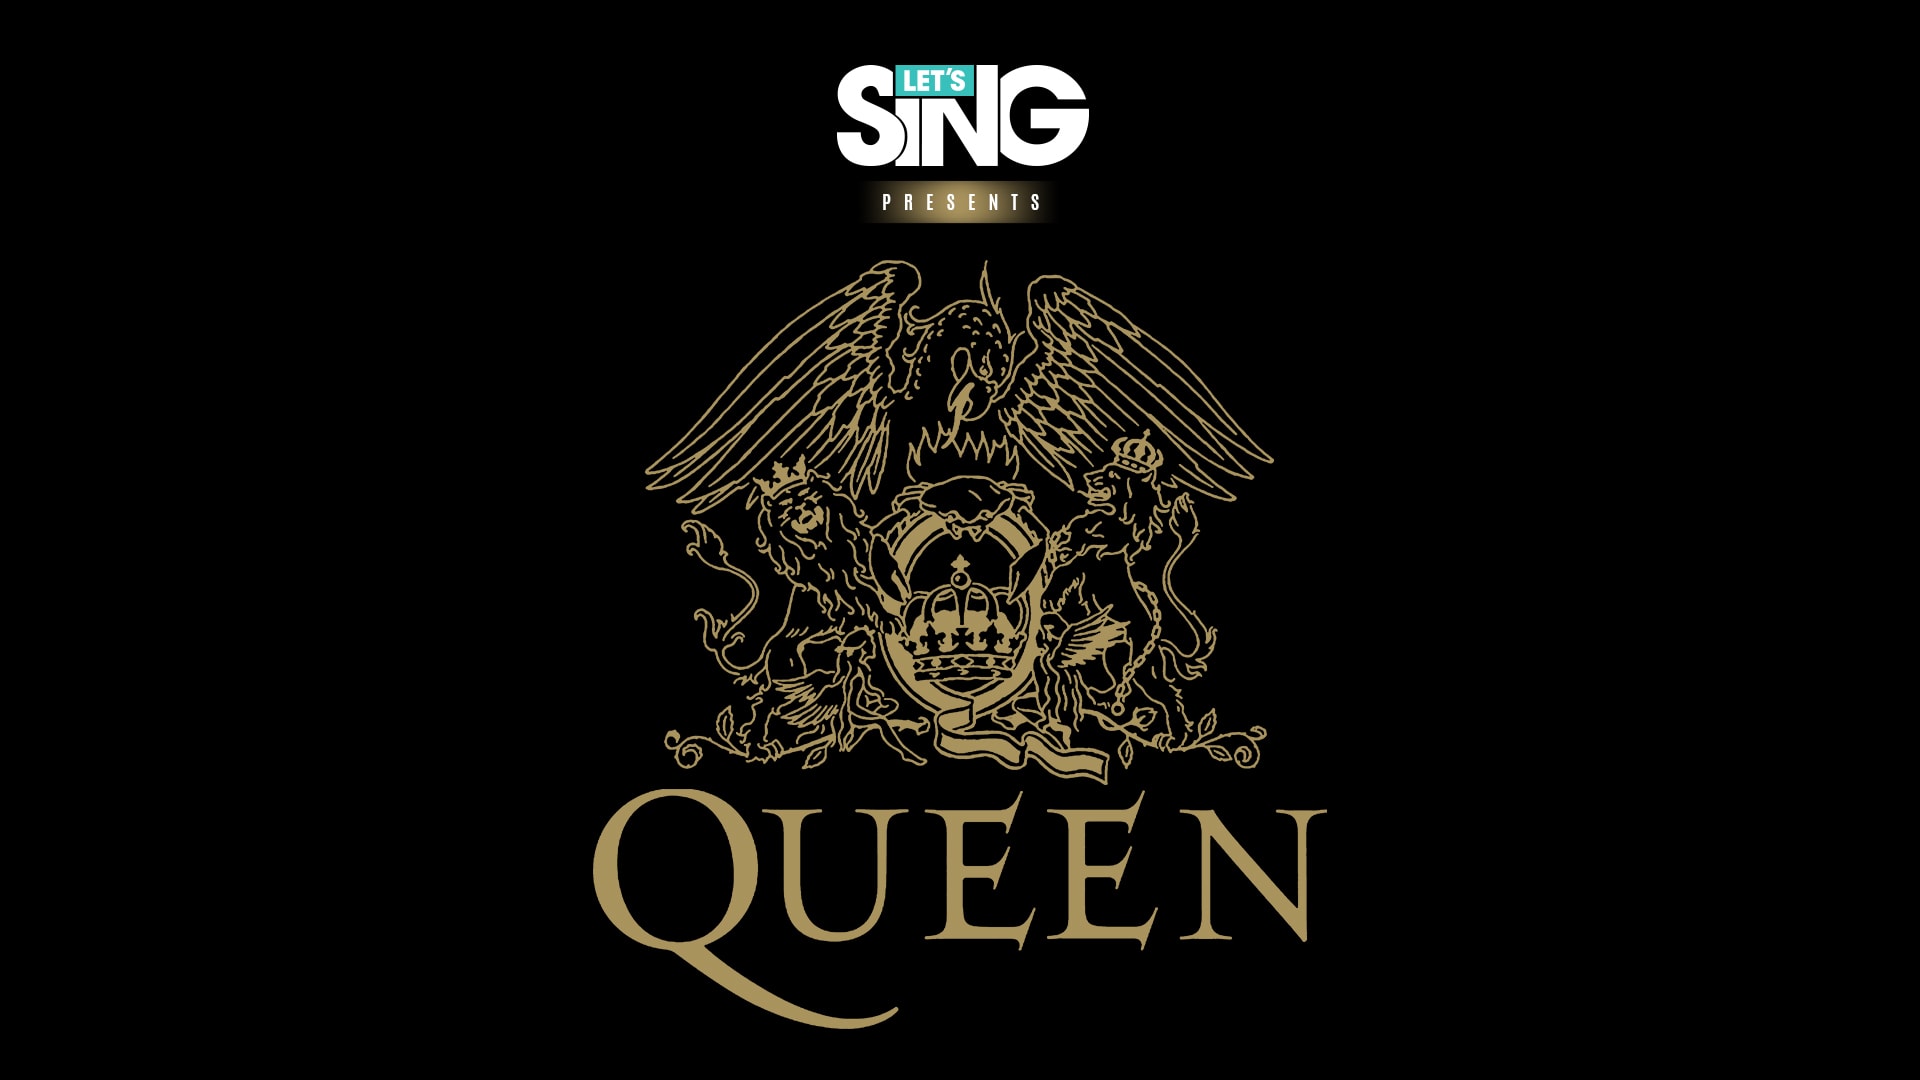 Let's Sing Queen 1